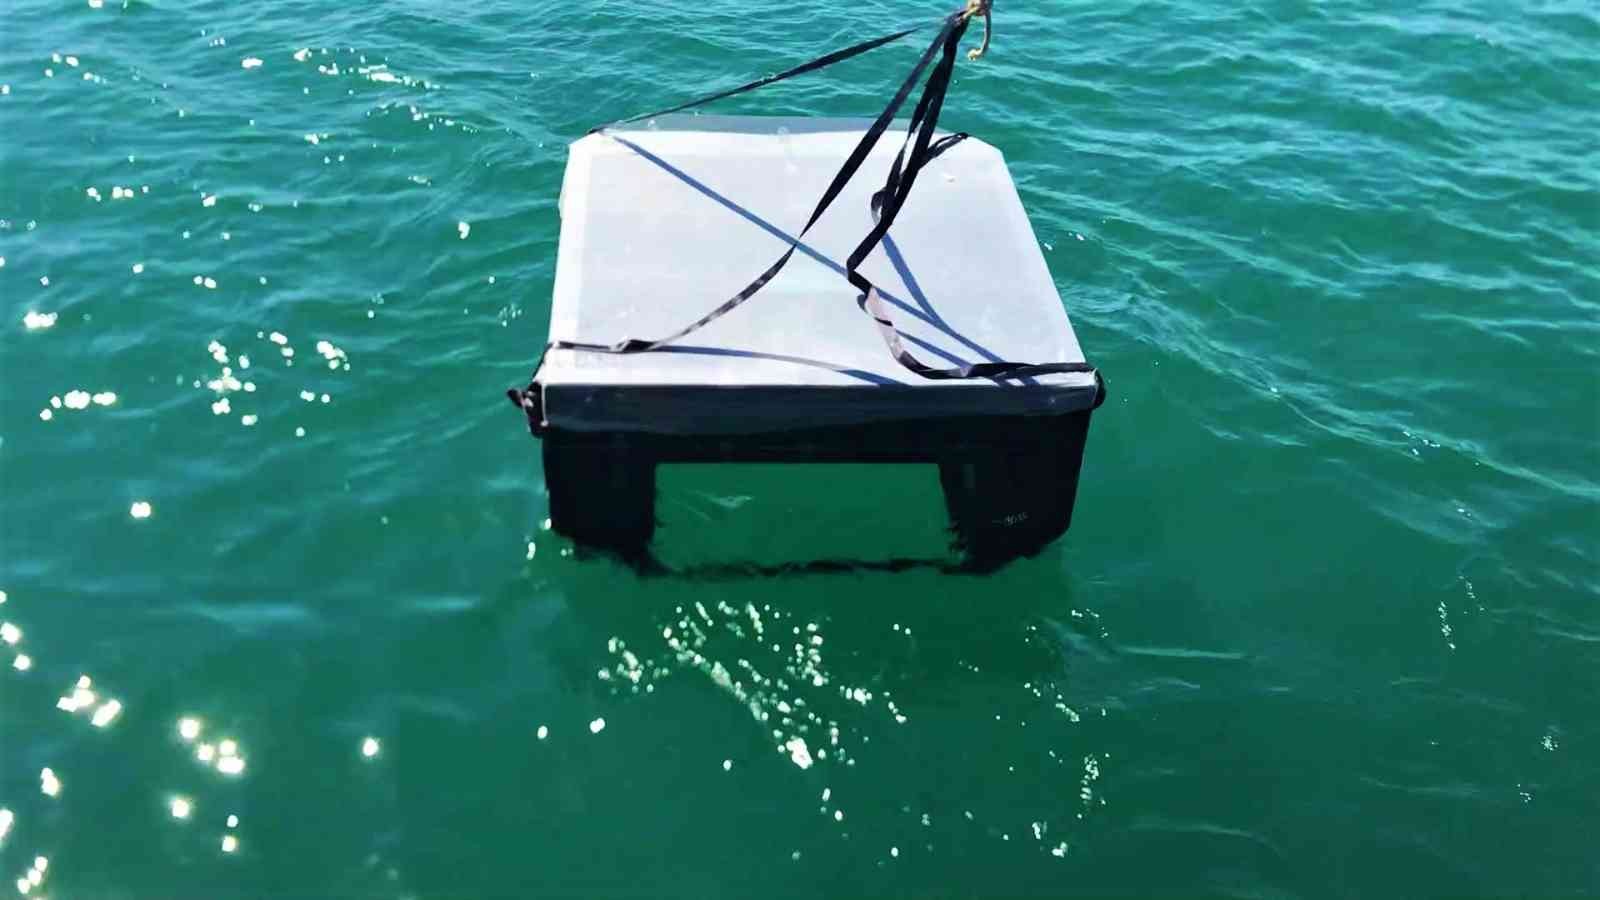 Lise öğrencilerinin geliştirdiği robot denizleri tertemiz yapacak #kocaeli